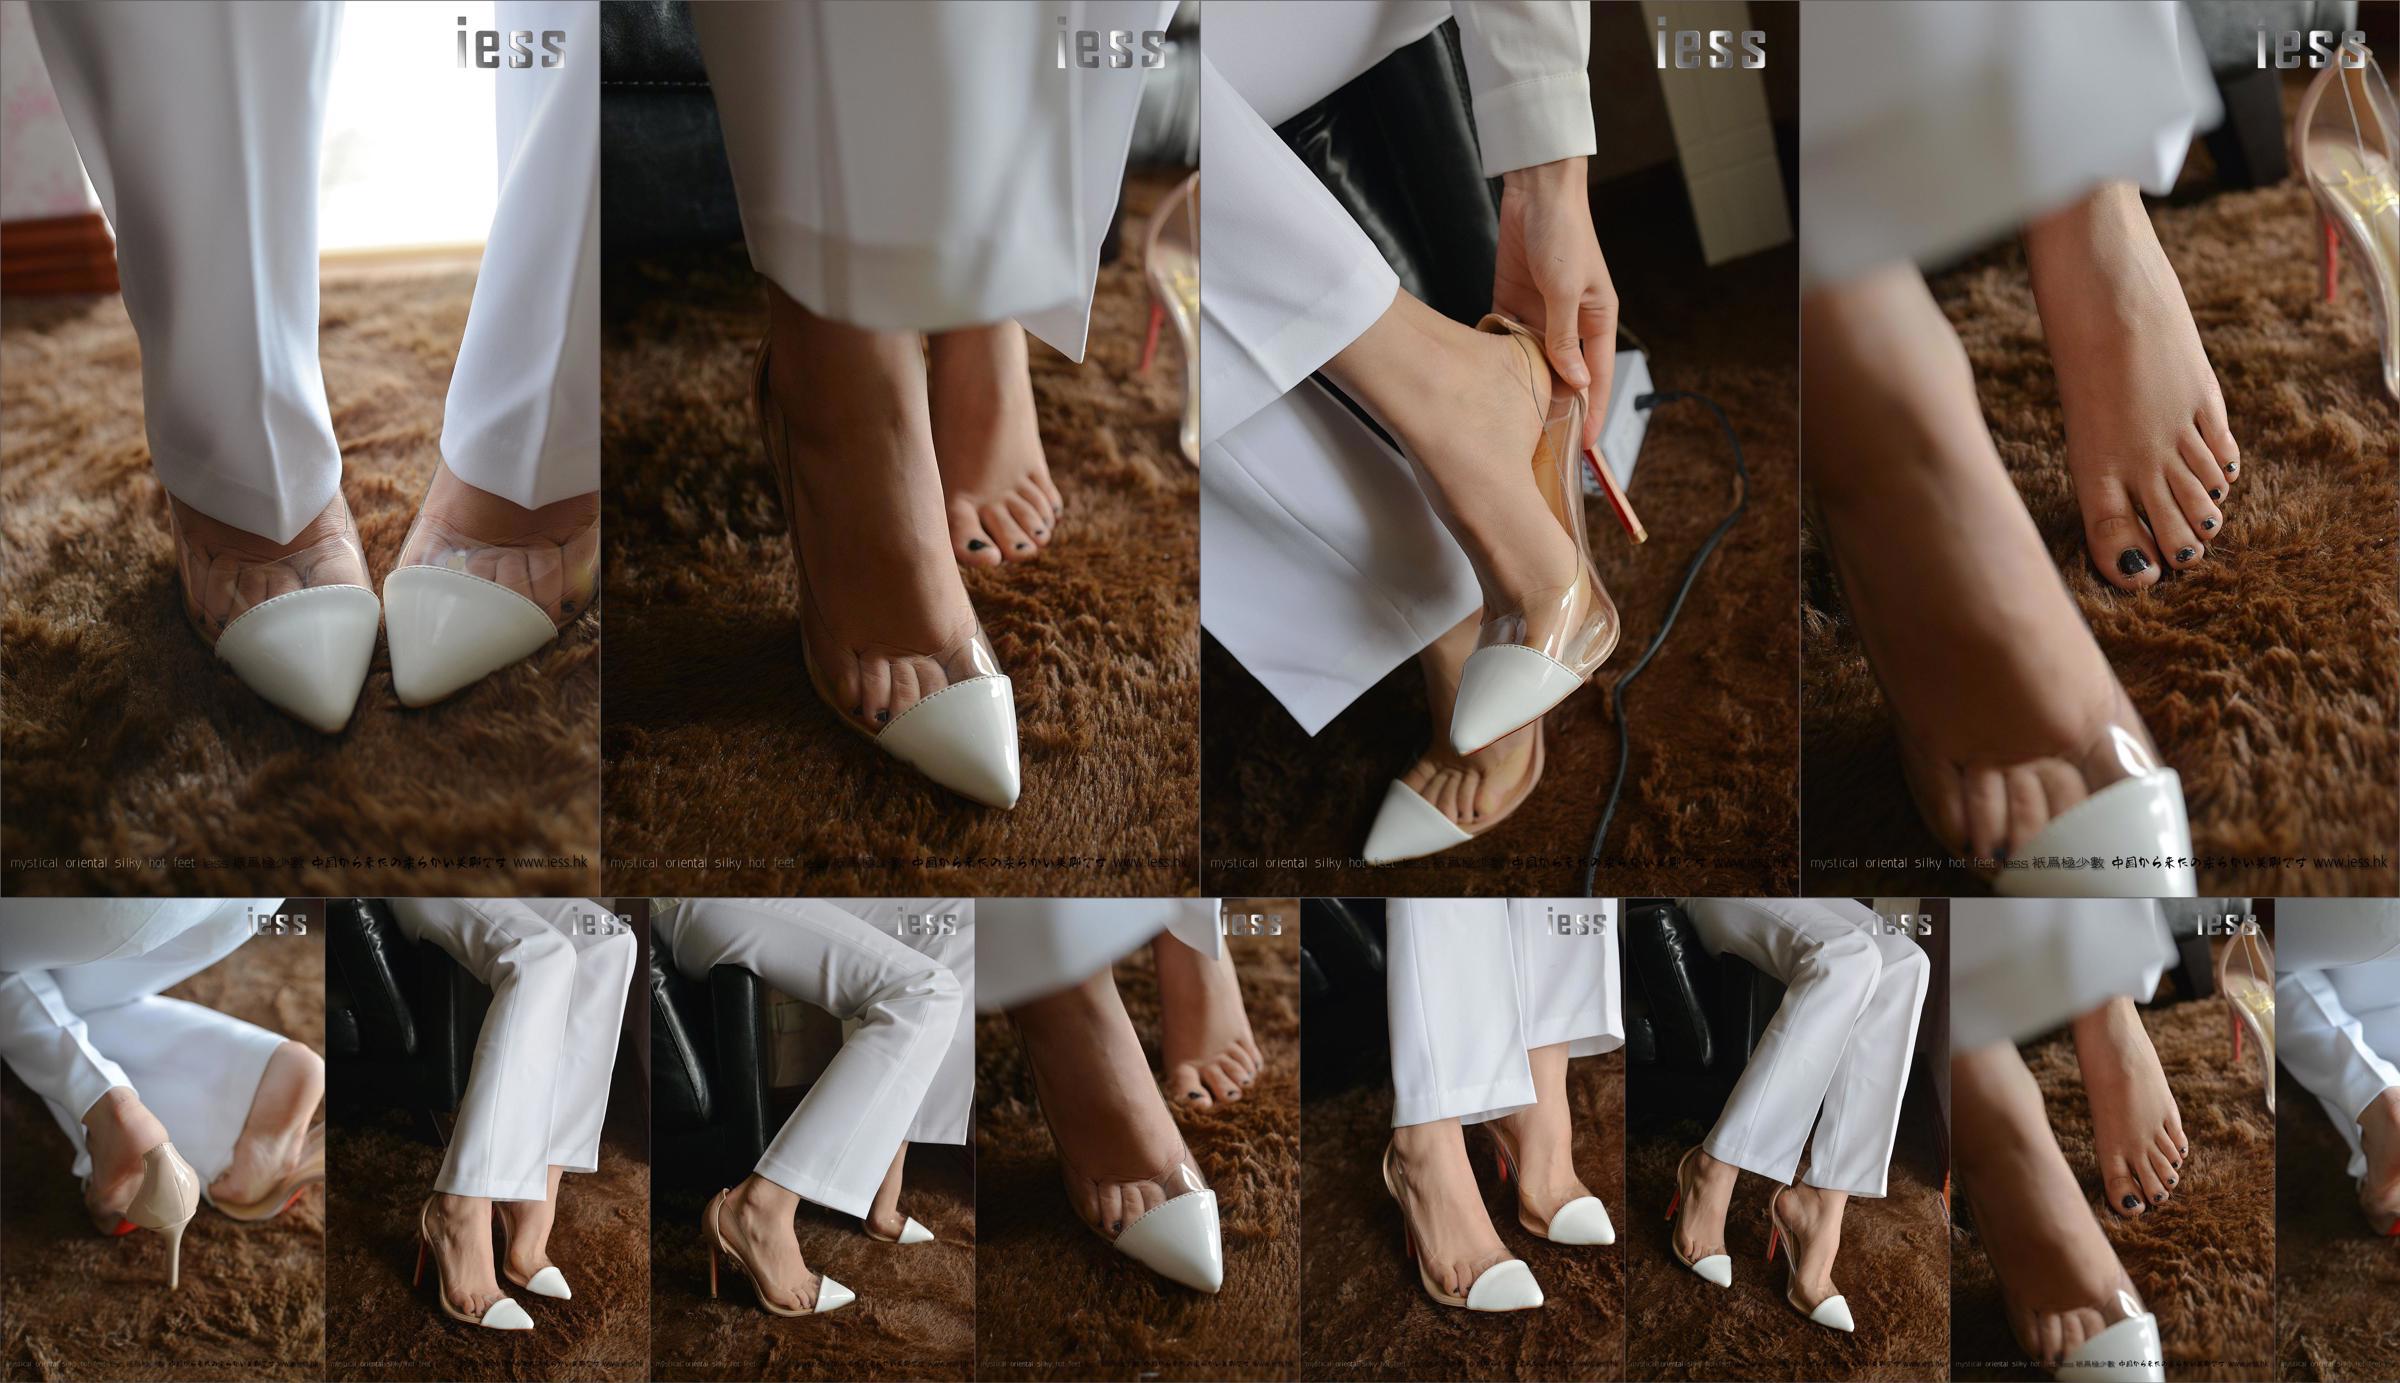 Silky Foot Bento 058 Suspense "Collection-Bare Foot High Heels" [IESS Wei Si Fun Xiang] No.2b9c5b Pagina 42